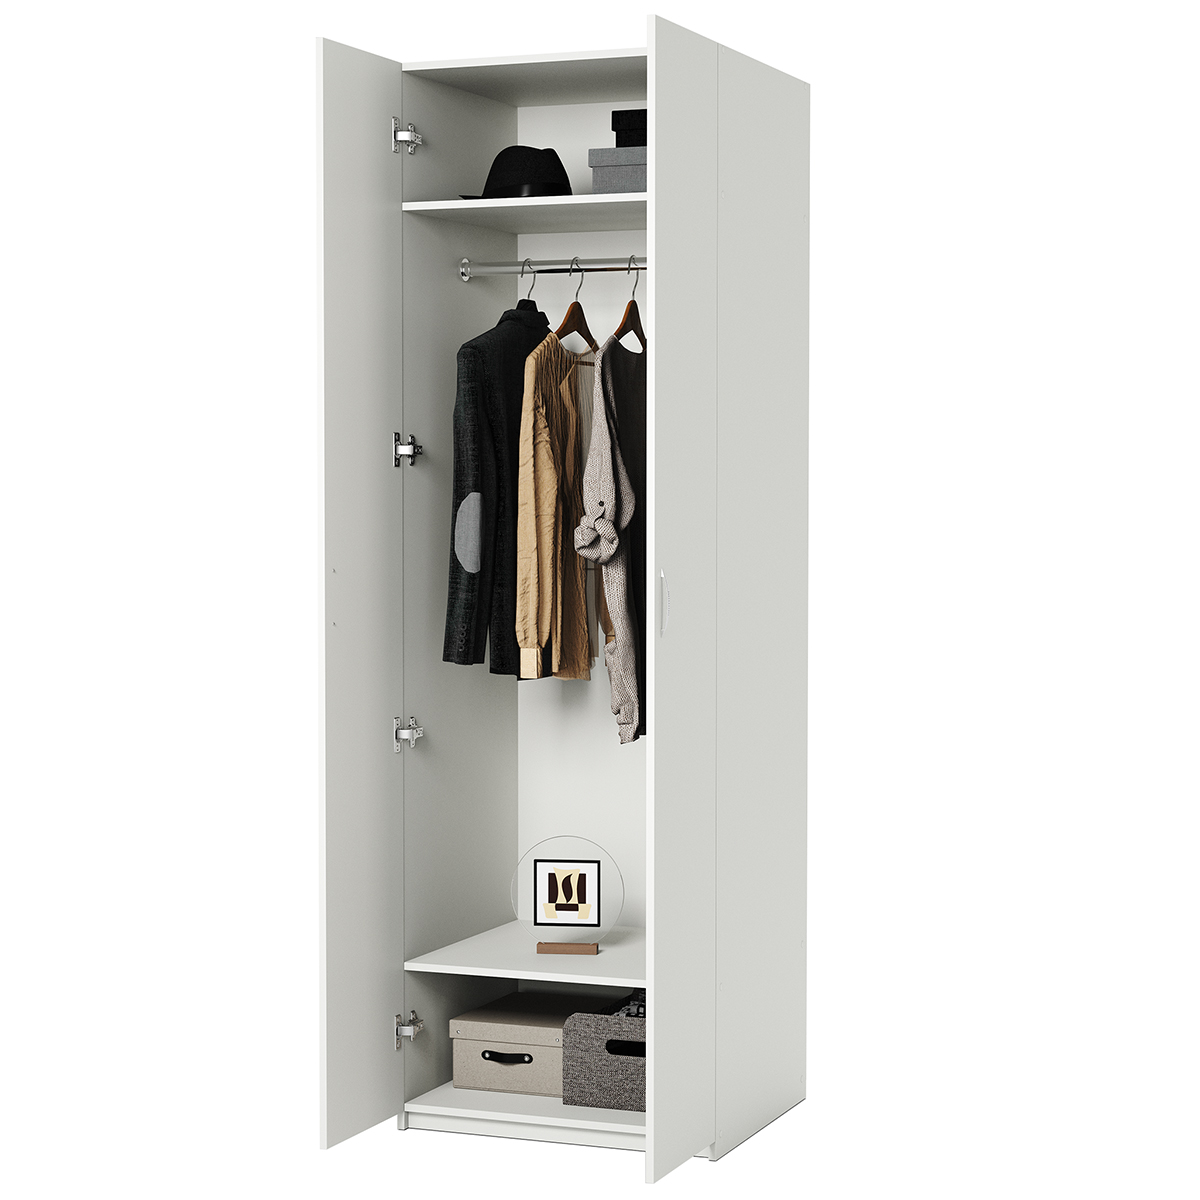 Шкаф для одежды Шарм-Дизайн ДО-2 90х60 белый